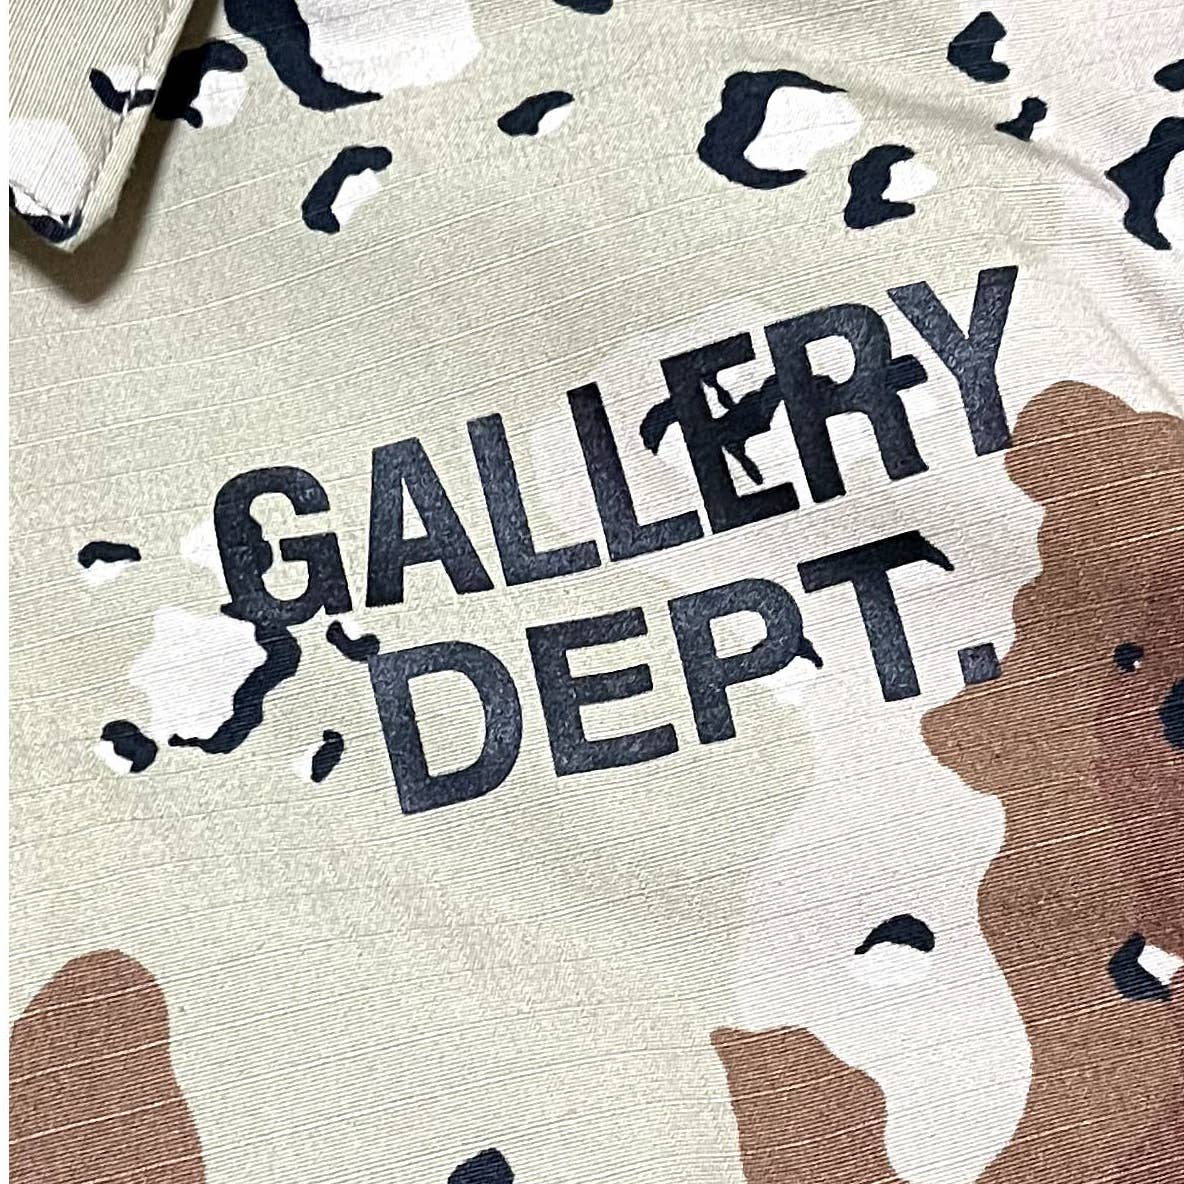 Gallery Dept Montecito Jacket (Desert Camo)